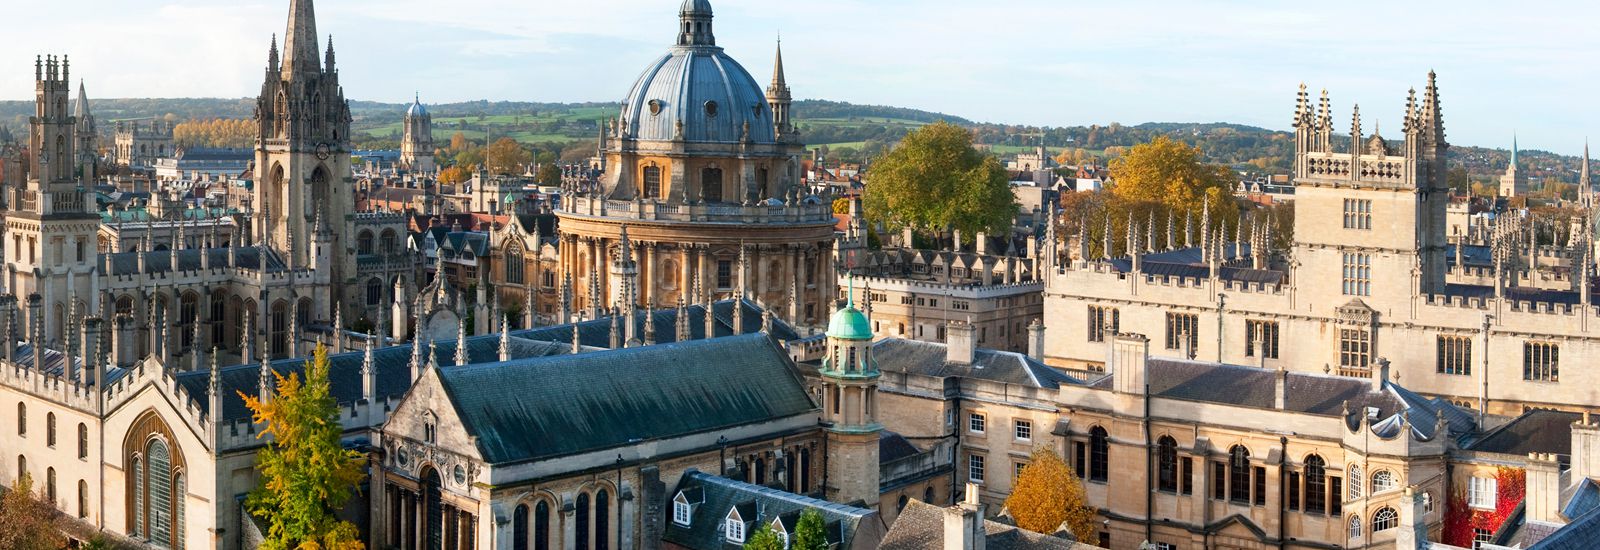 billigste Hochschulen in Oxford für internationale Studenten